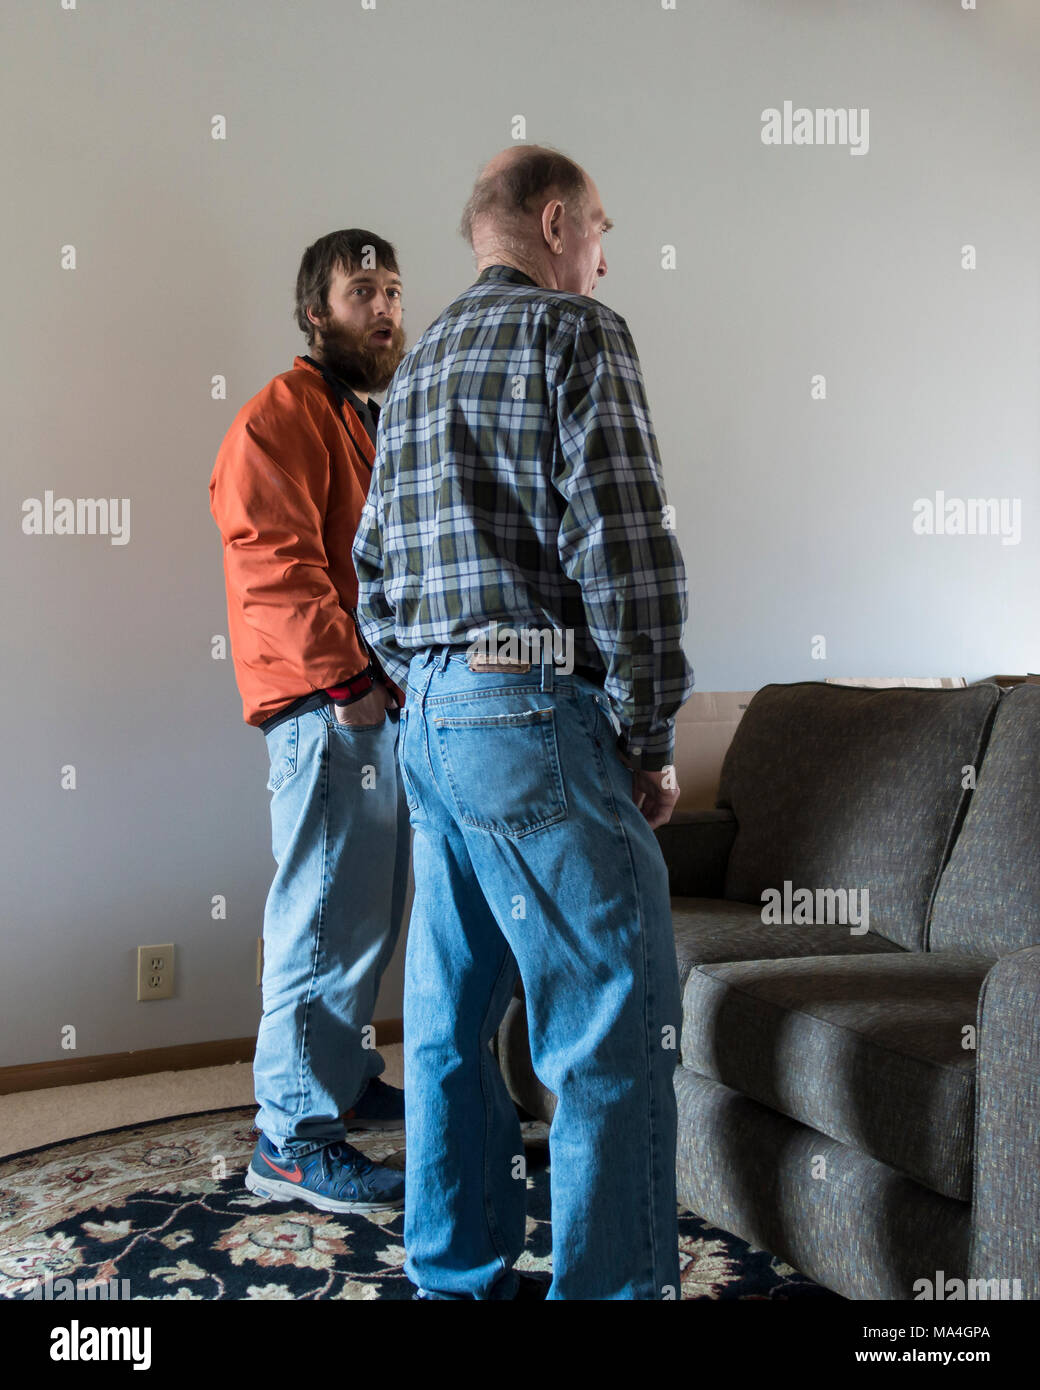 Zwei kaukasische Männer, 20s und eine 80 Jahre alte Senior, Converse, während der junge Mann einen überraschten Ausdruck zeigt. Wichita, Kansas, USA. Stockfoto